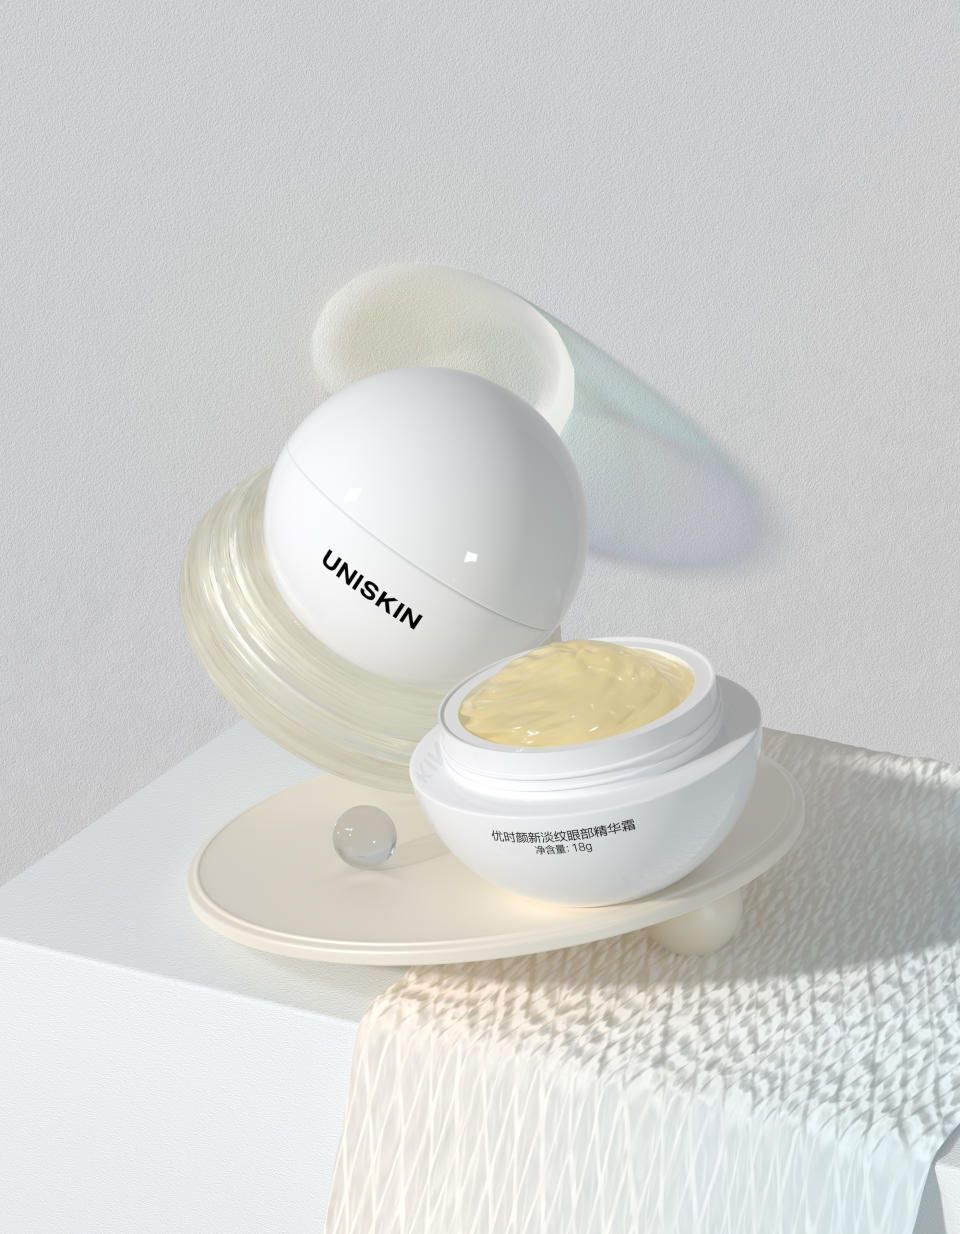 Uniskin’s eye cream hero product.